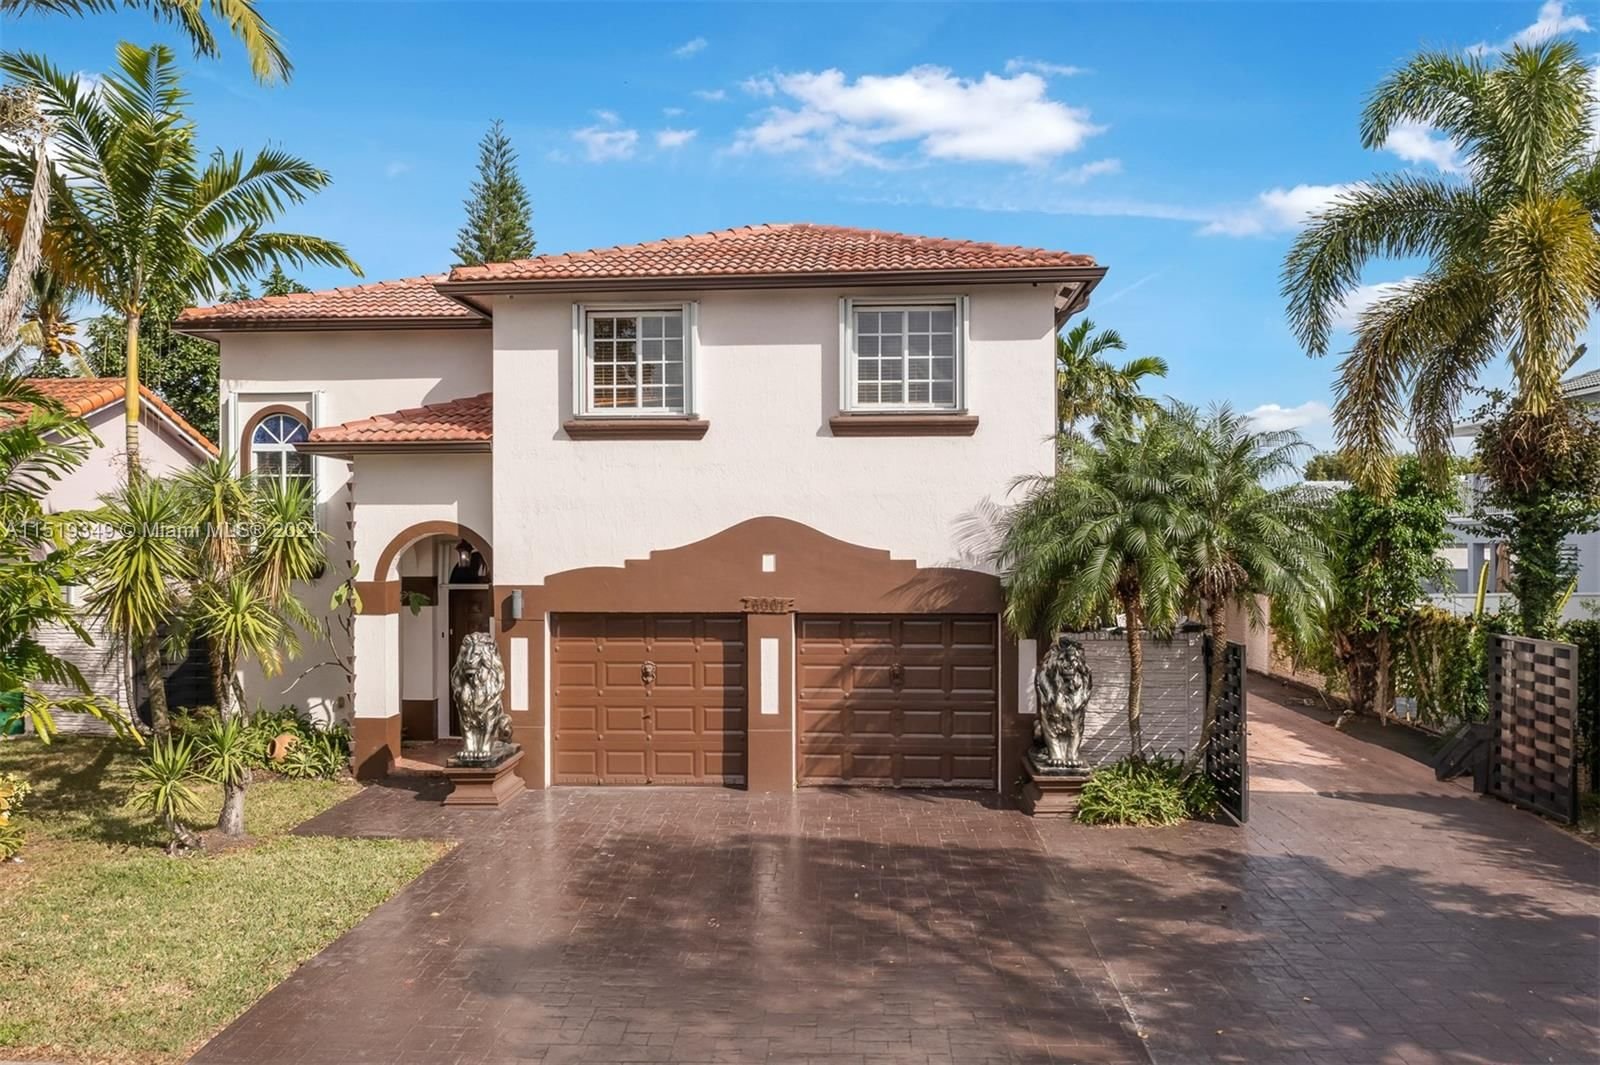 Real estate property located at 6001 163rd Pl, Miami-Dade County, KINGDOM DREAM, Miami, FL